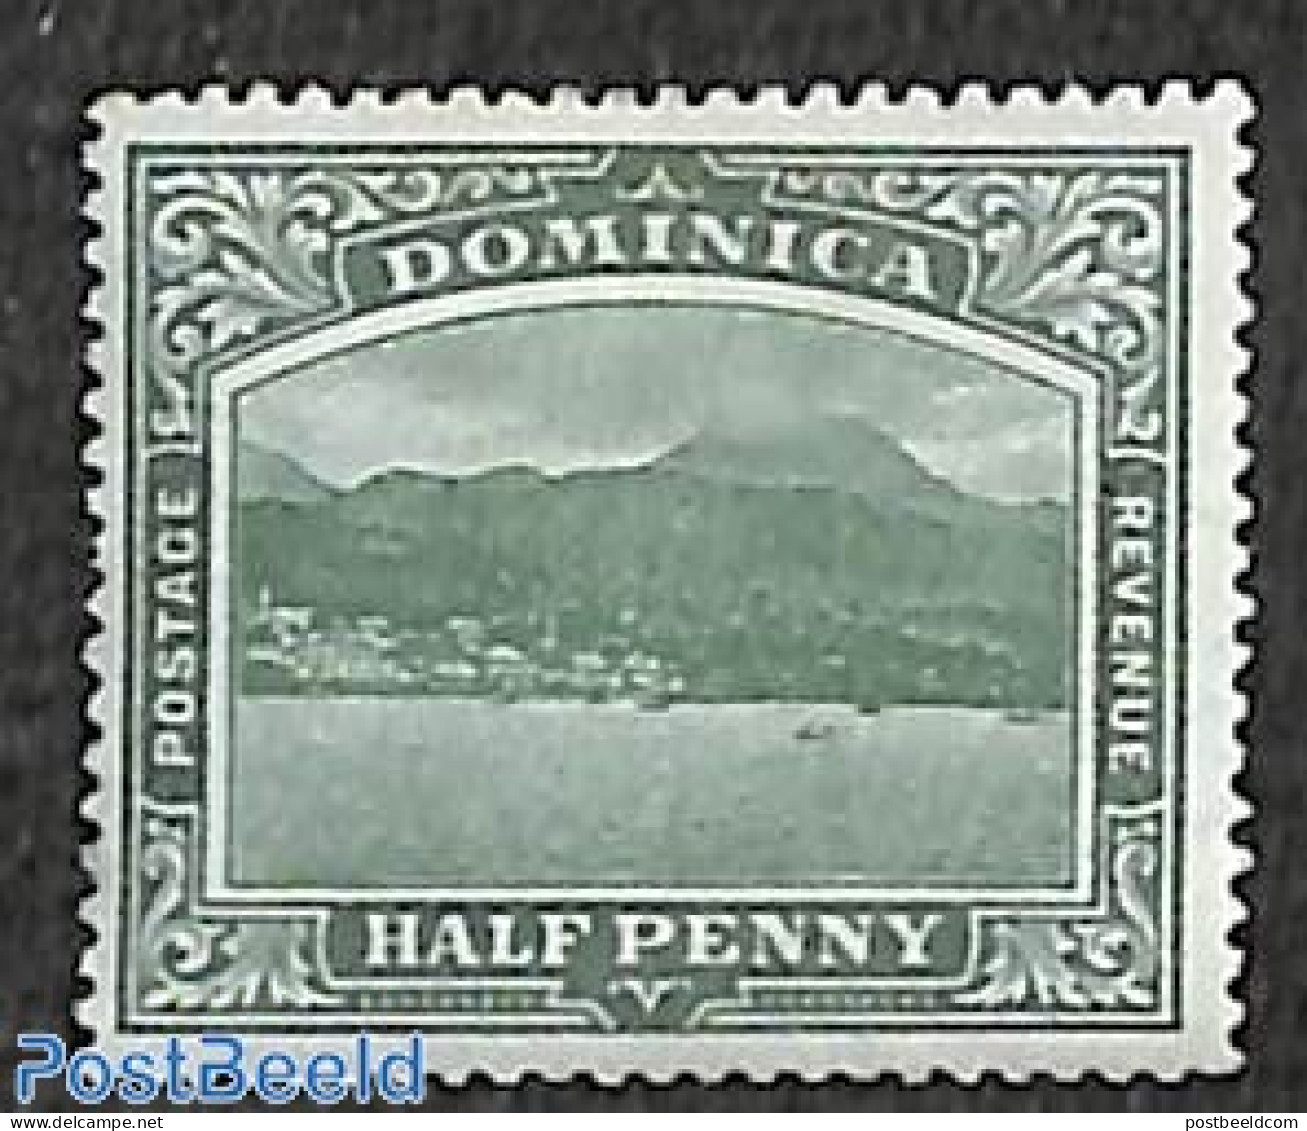 Dominica 1903 1/2d, Roseau, WM CC, Stamp Out Of Set, Unused (hinged) - Dominicaine (République)